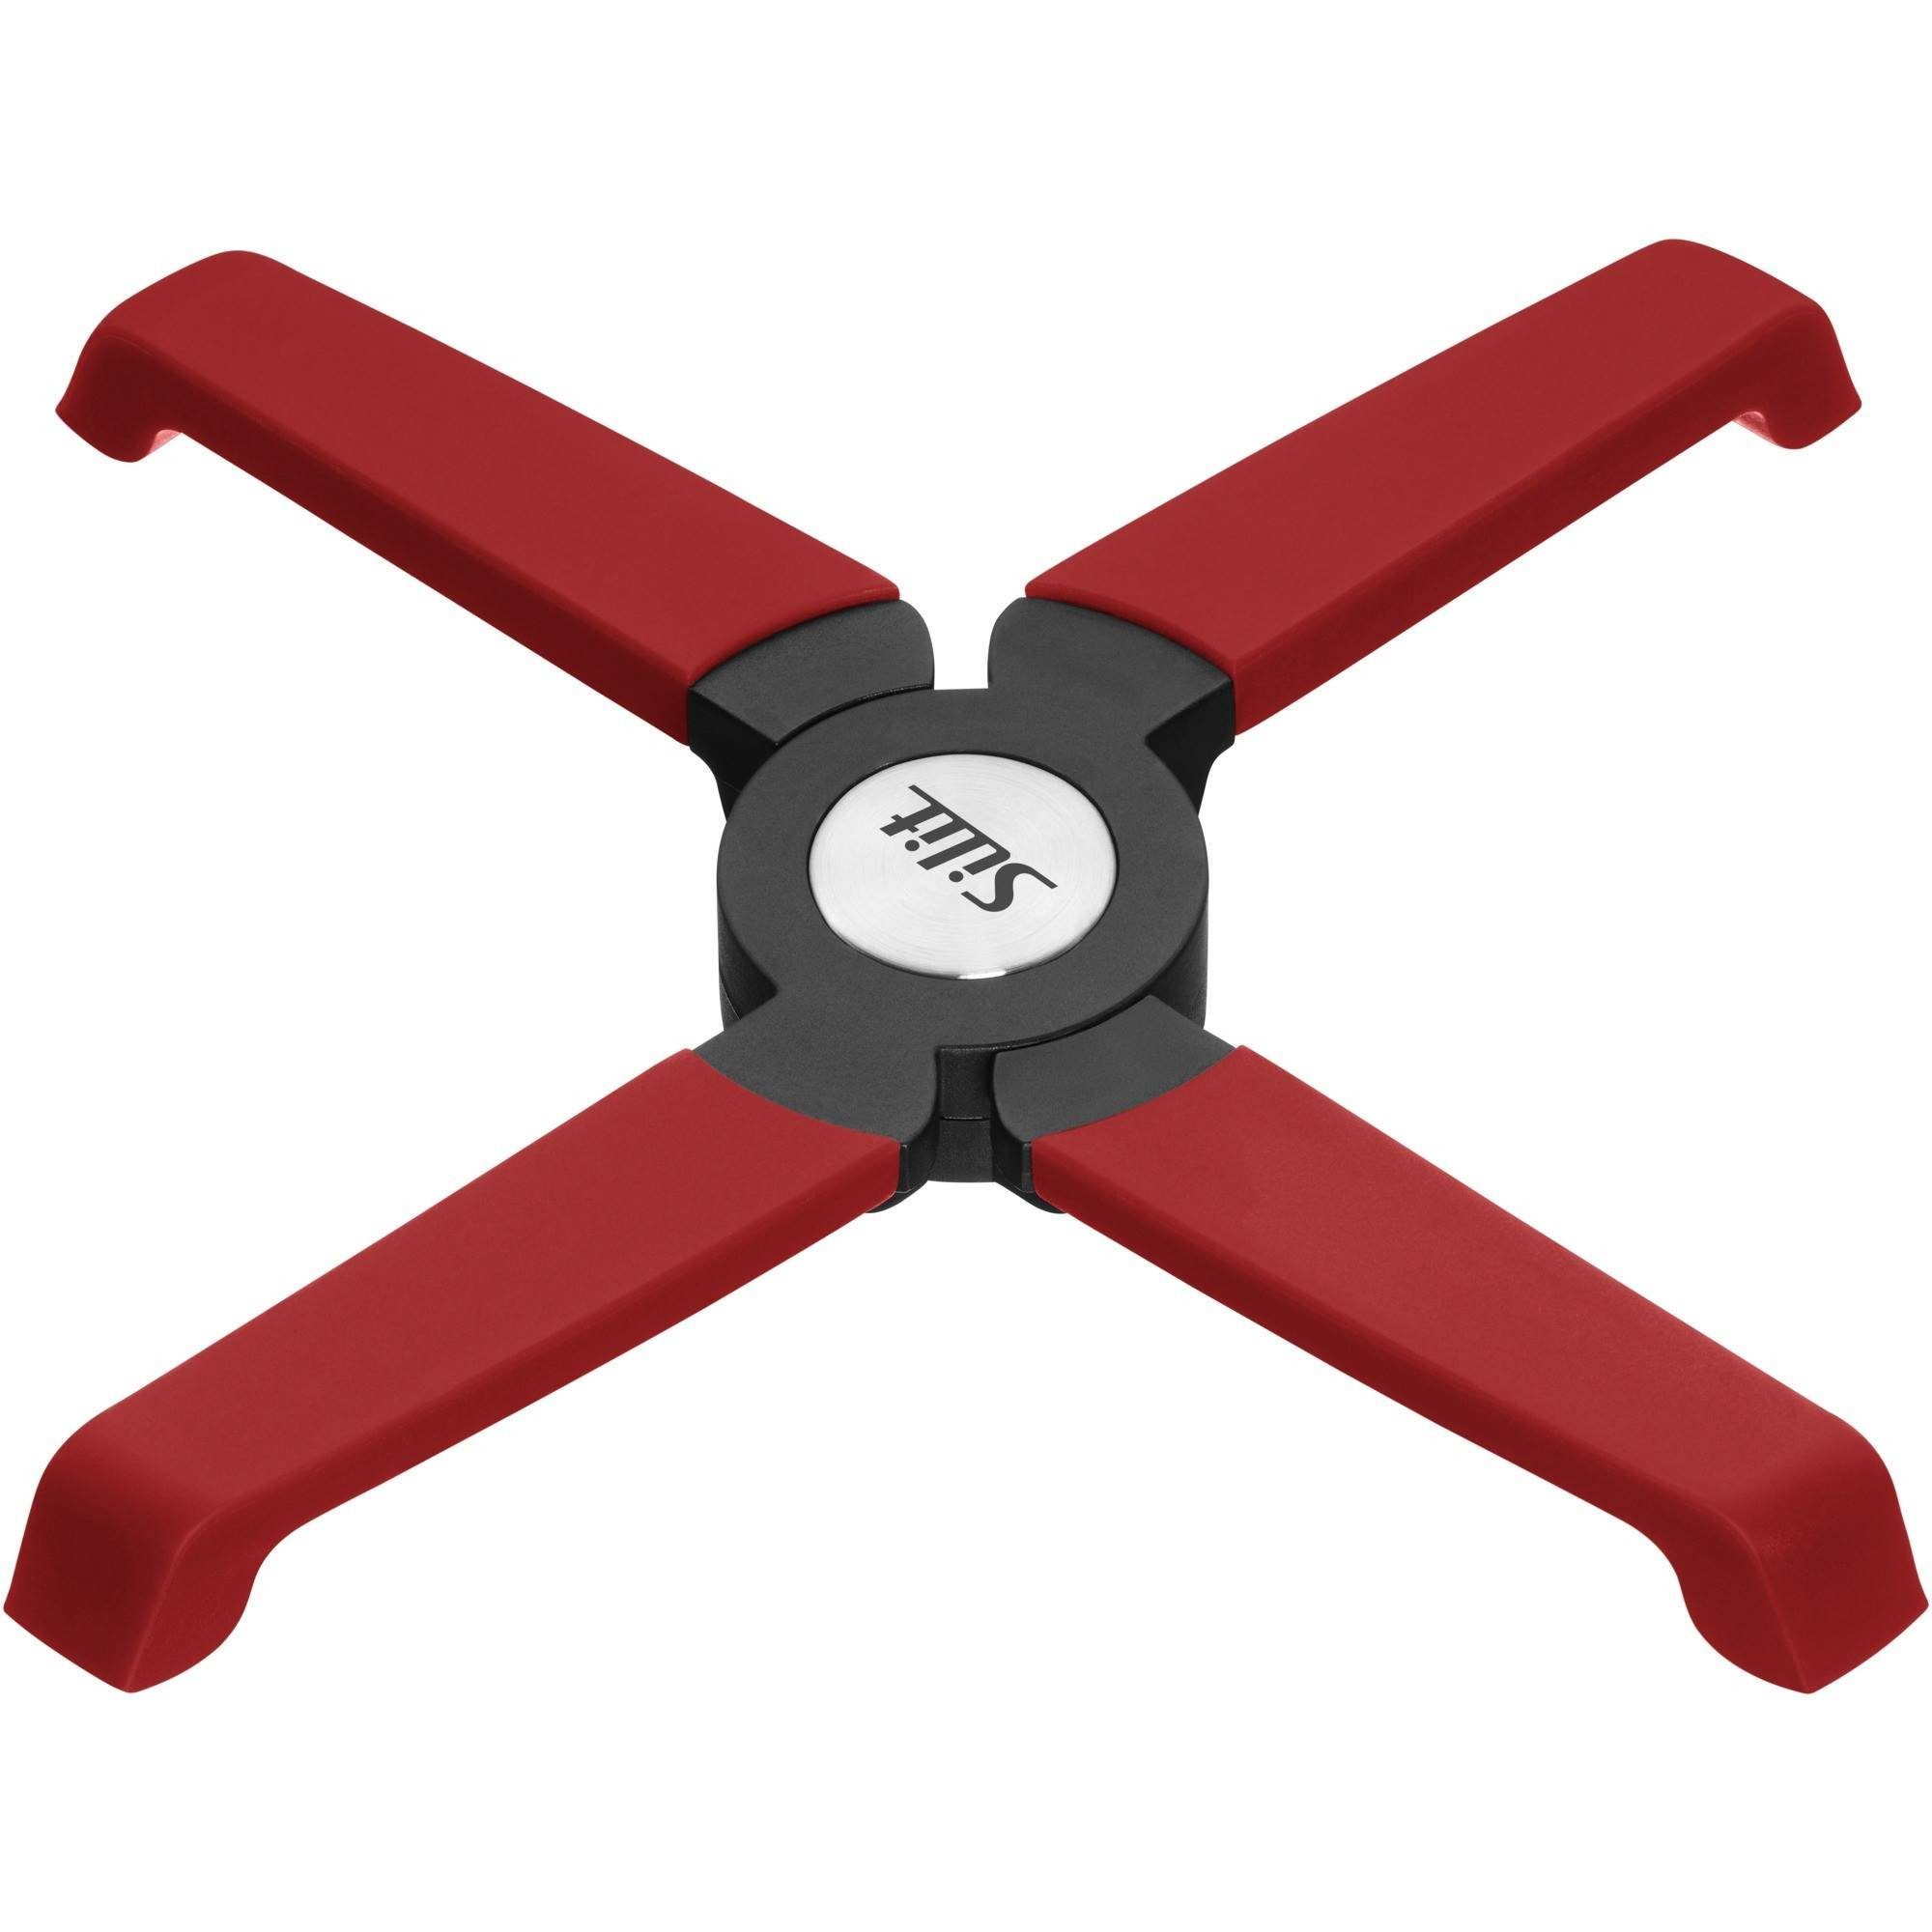 Silit Topfuntersetzer, 1x magnetischer Untersetzer Topf ausklappbar (18,2 x 3,6 x 1,5 cm), 1-tlg.